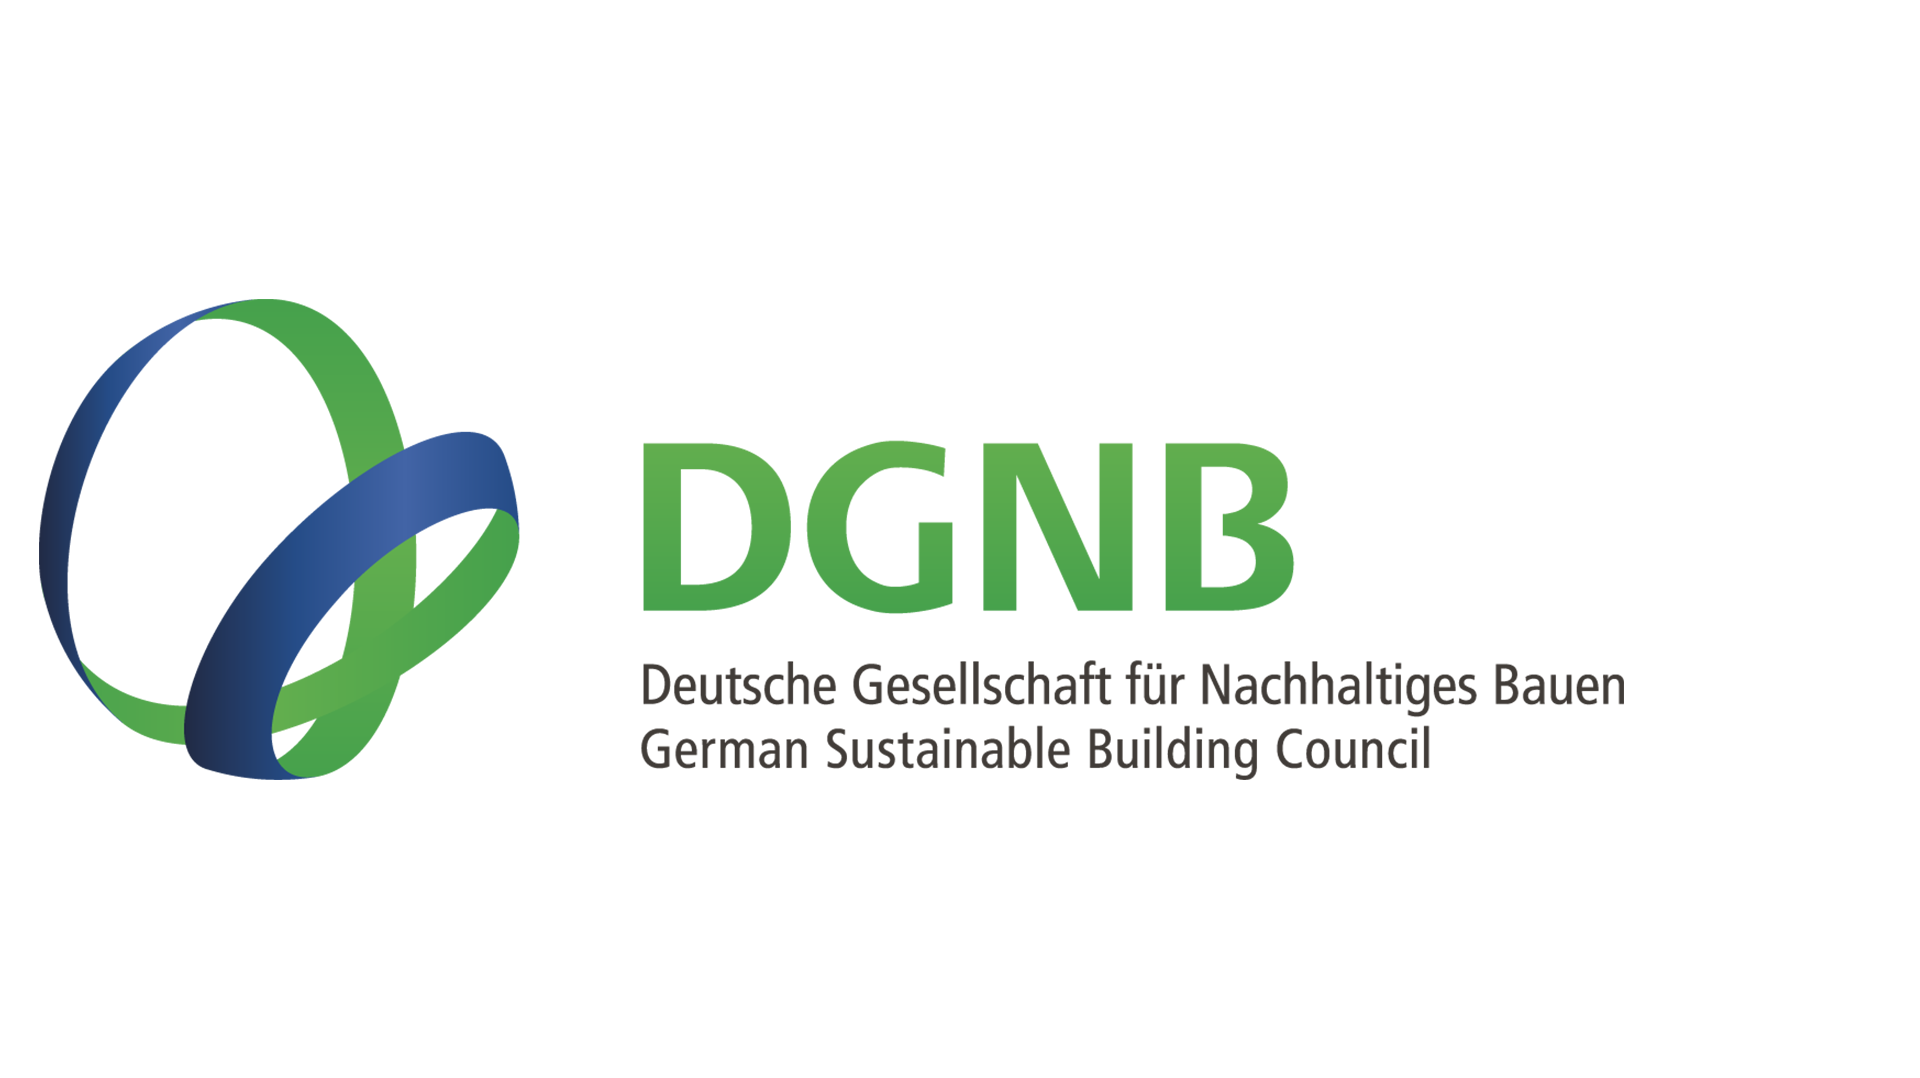 Deutsche Gesellschaft für Nachhaltiges Bauen